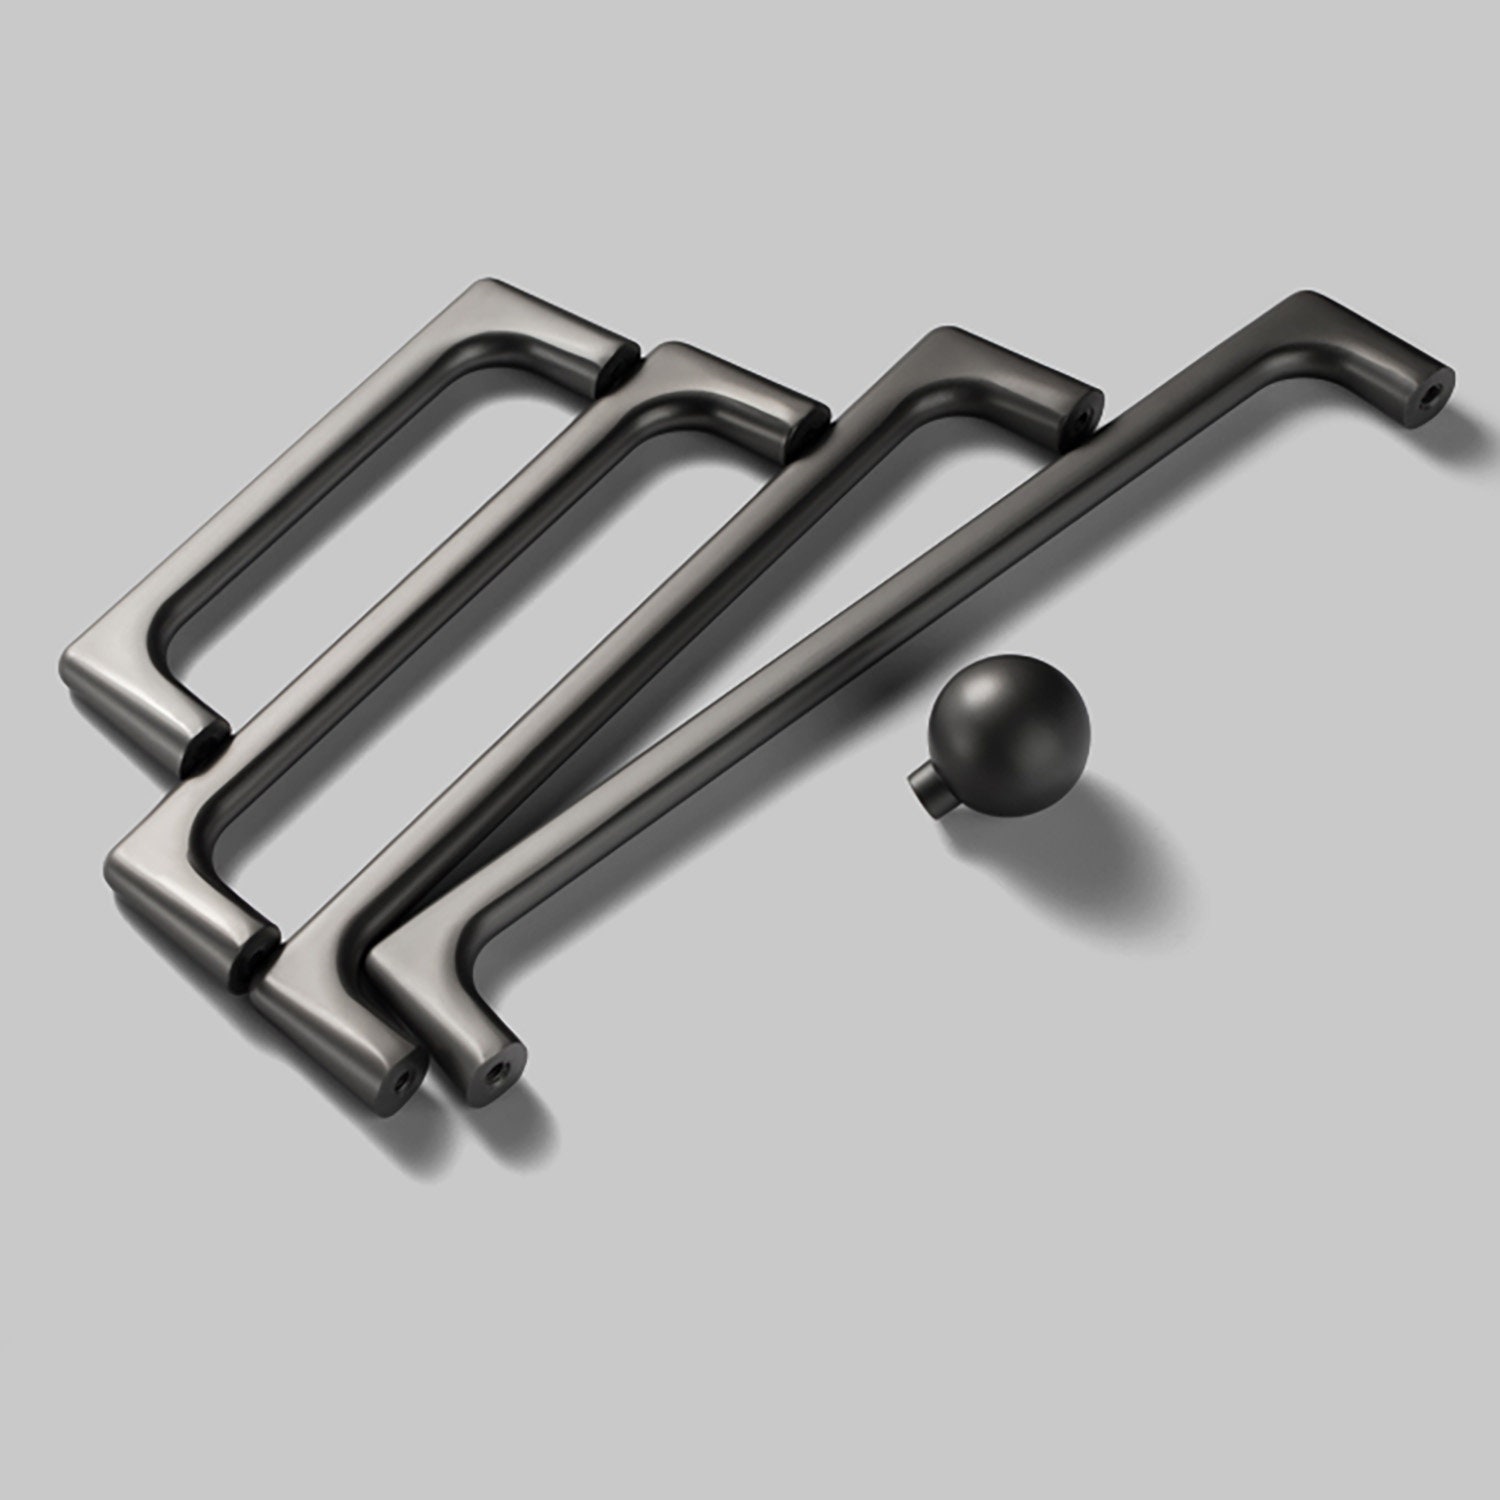 gunmetal grey handles